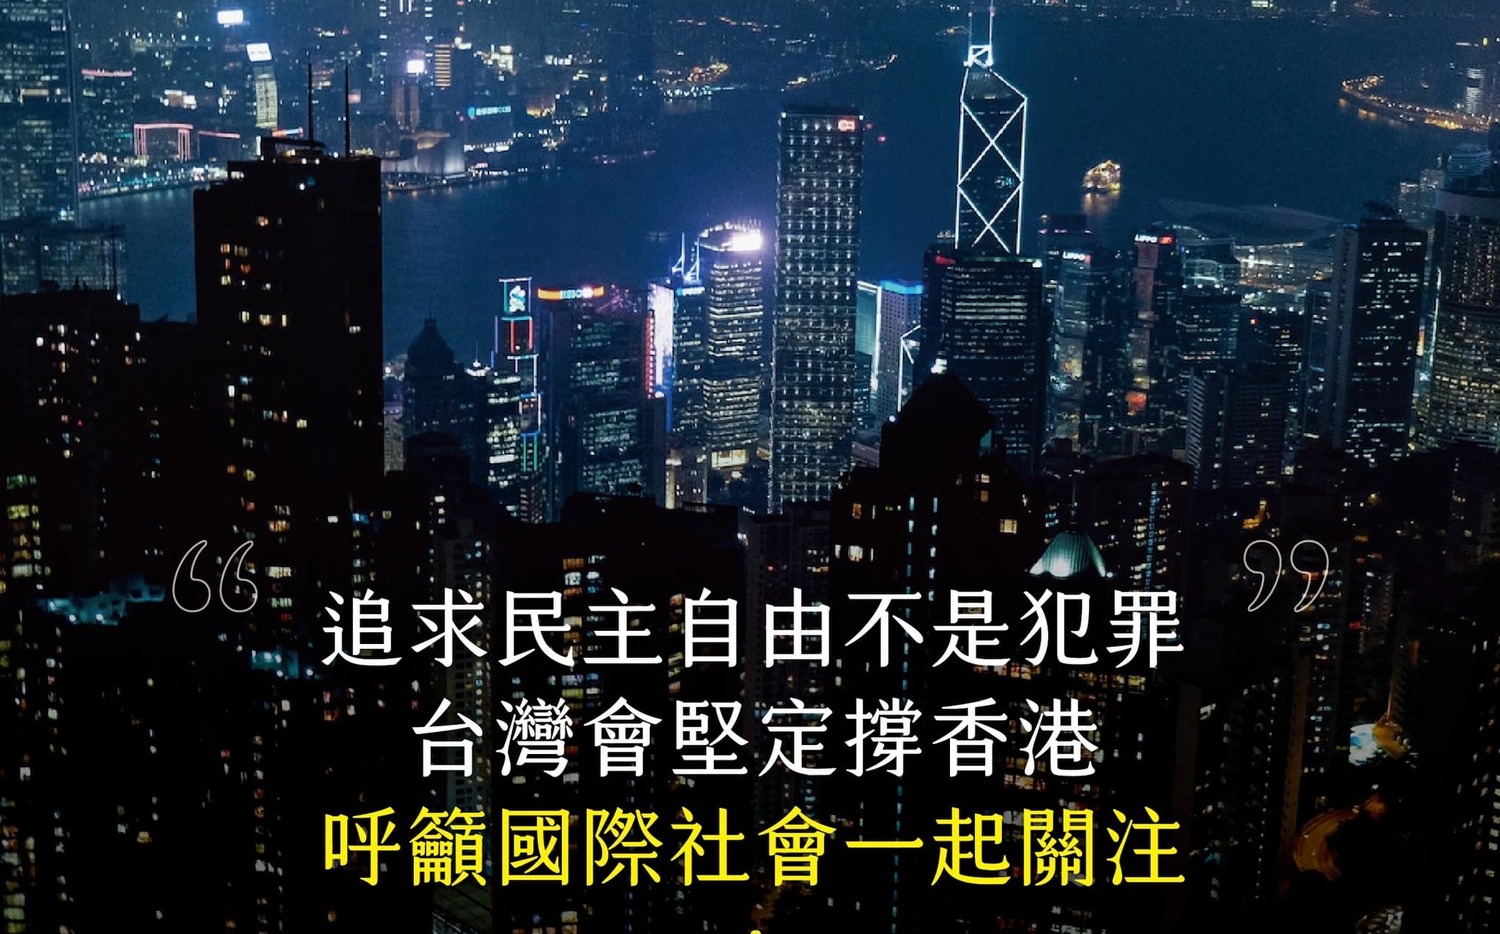 立場新聞6高層被捕!蔡英文：追求民主自由不是犯罪 台灣堅定撐香港 | 政